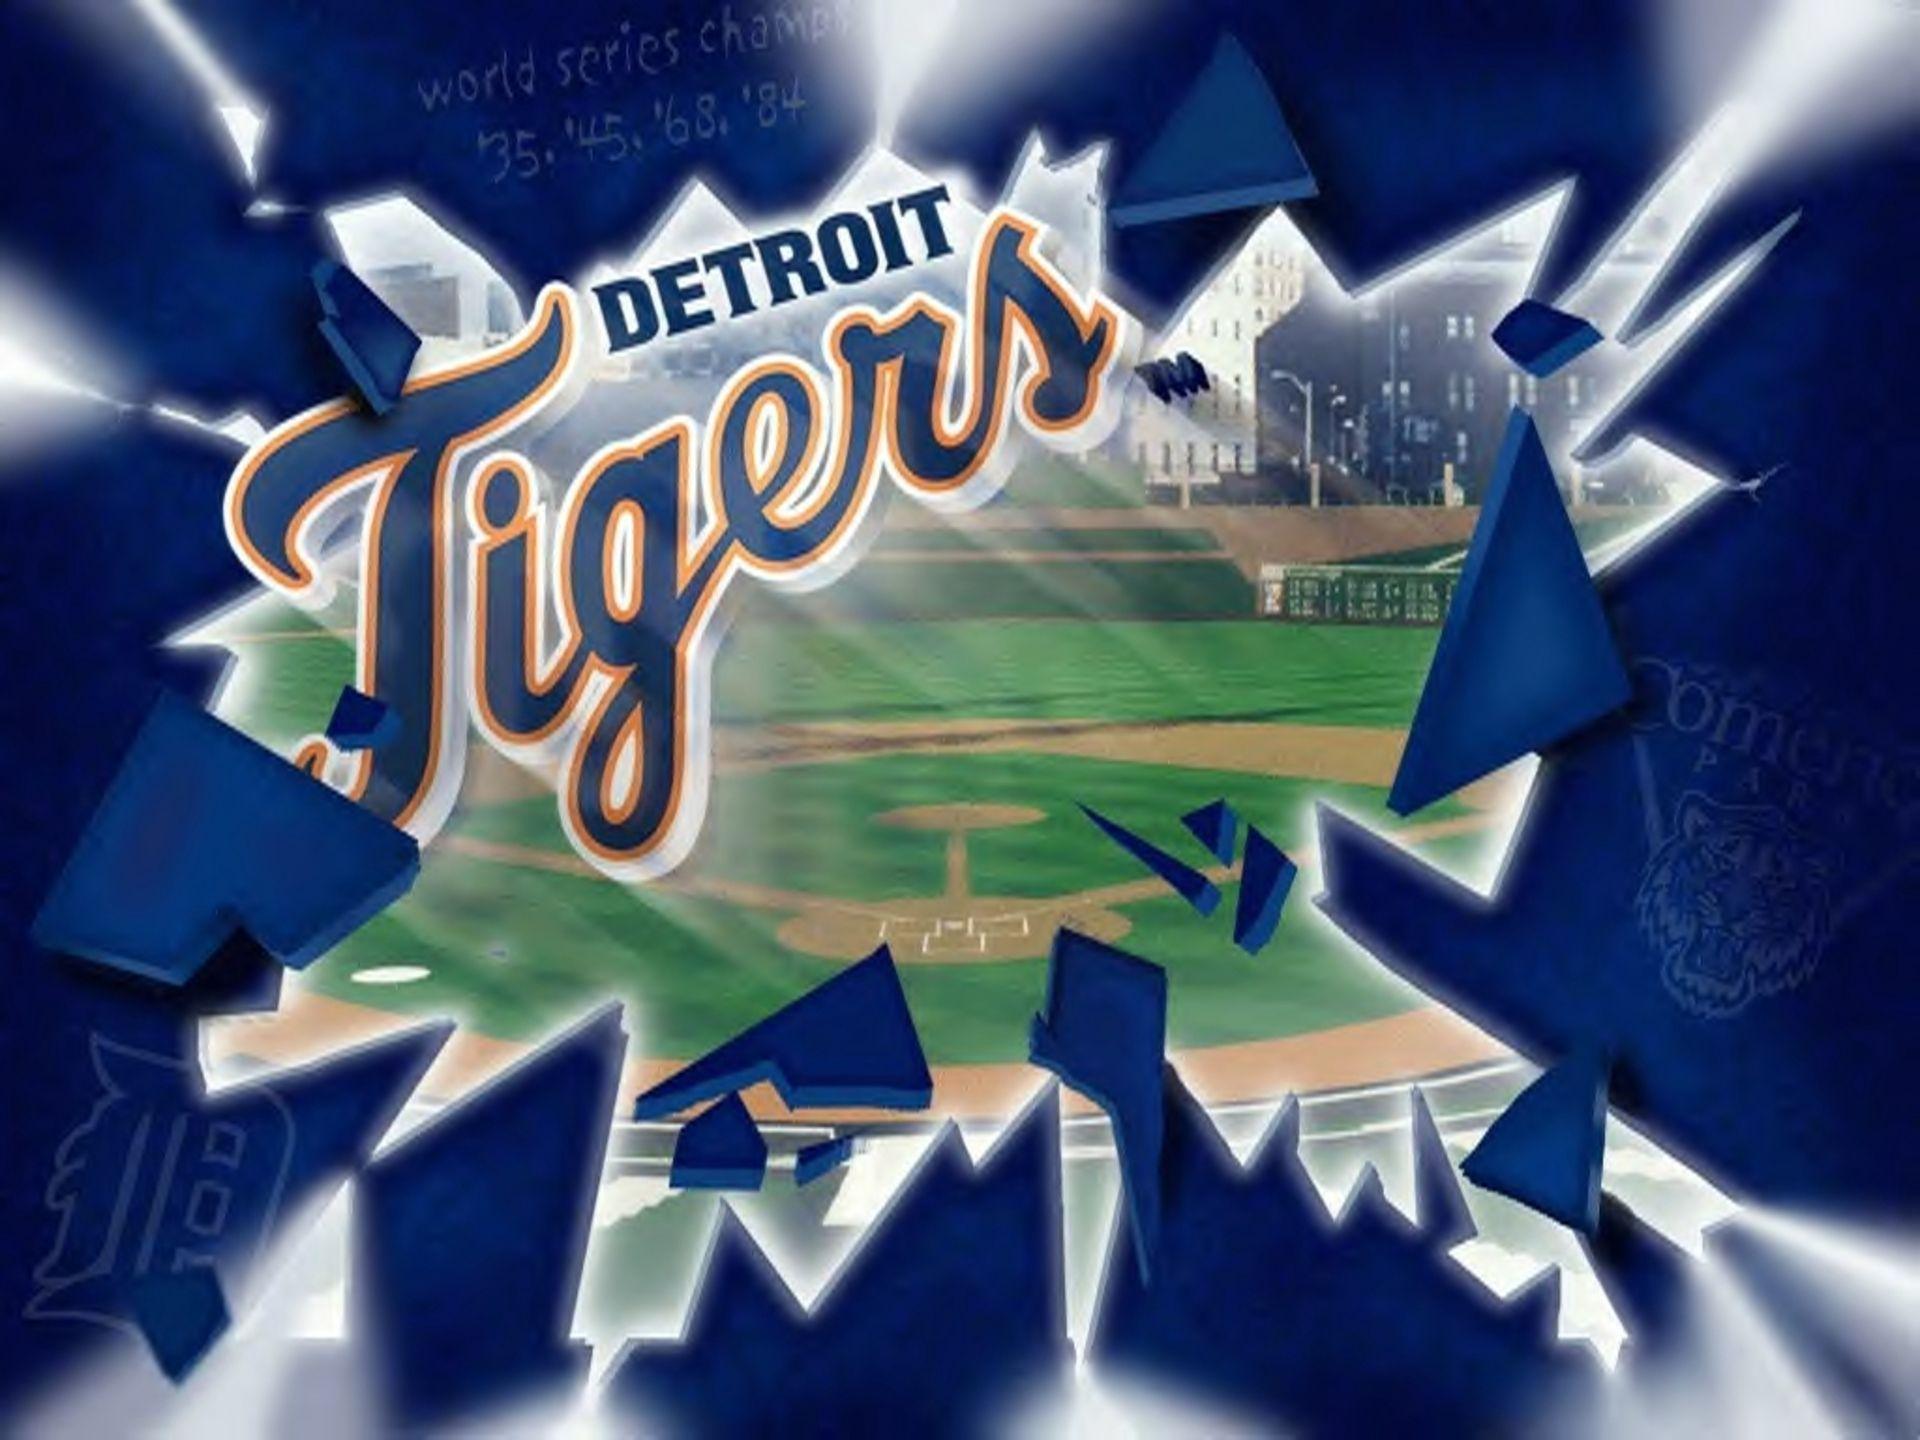 Detroit Tigers 920×440 Pixels. Love. Randomness